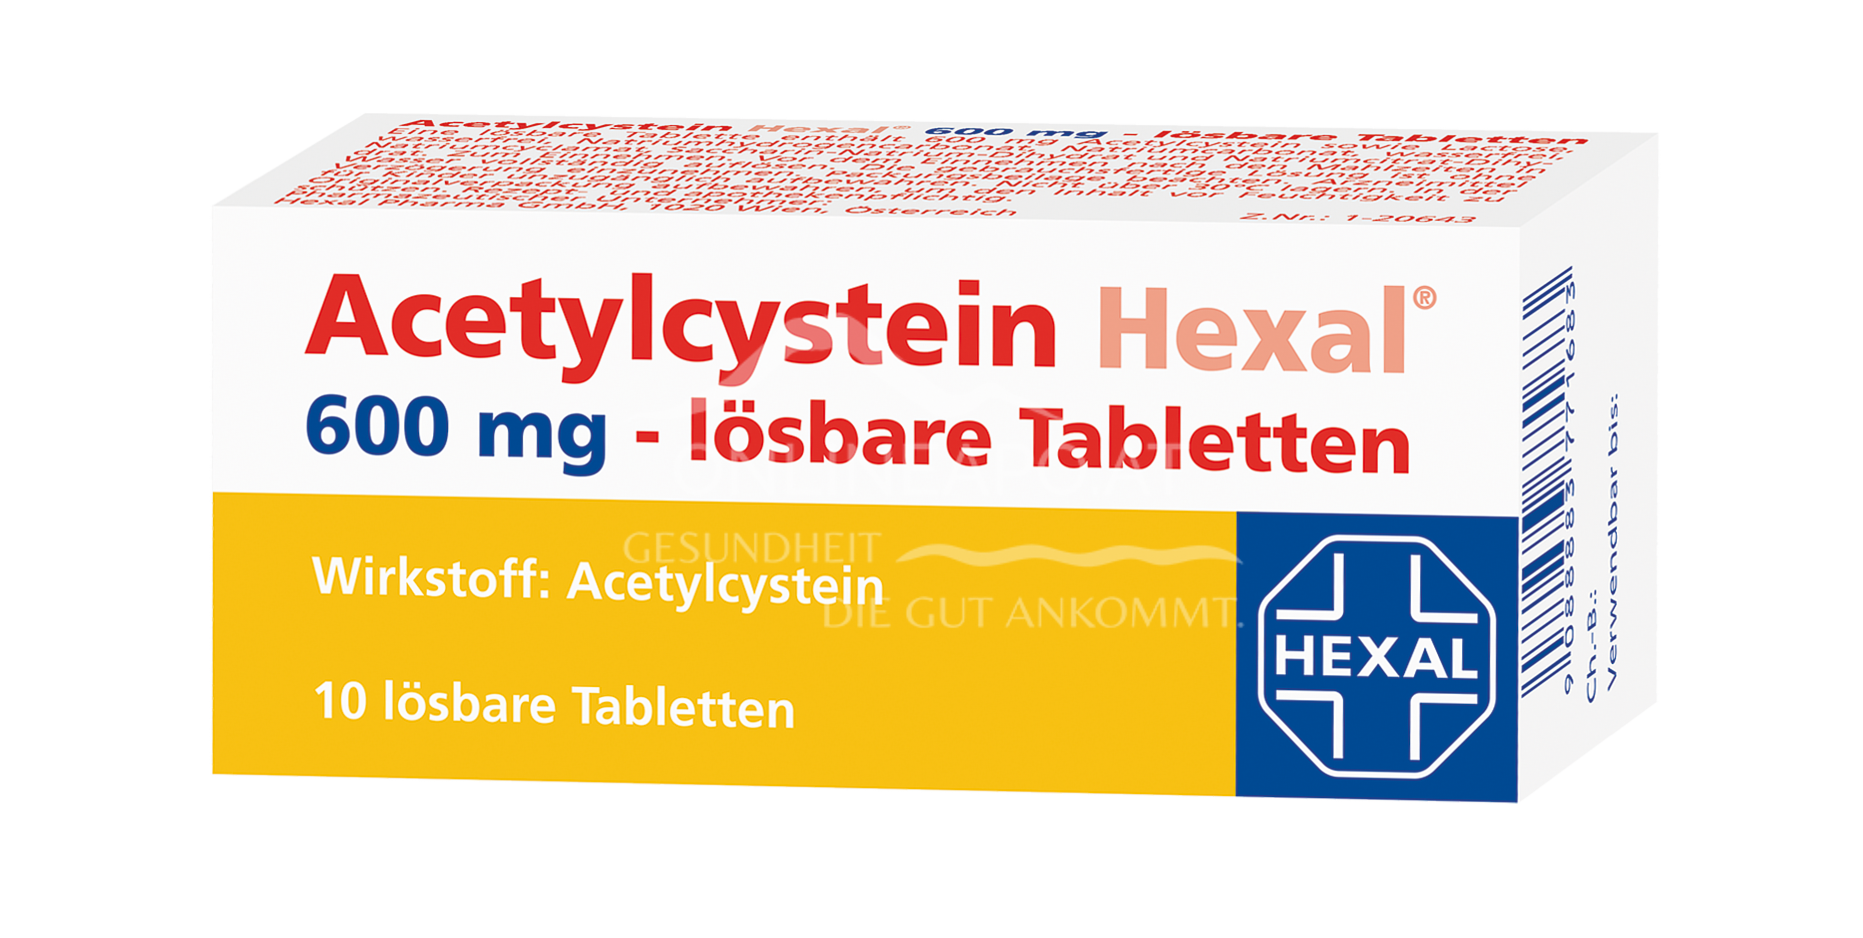 Acetylcystein Hexal 600 mg lösbare Tabletten